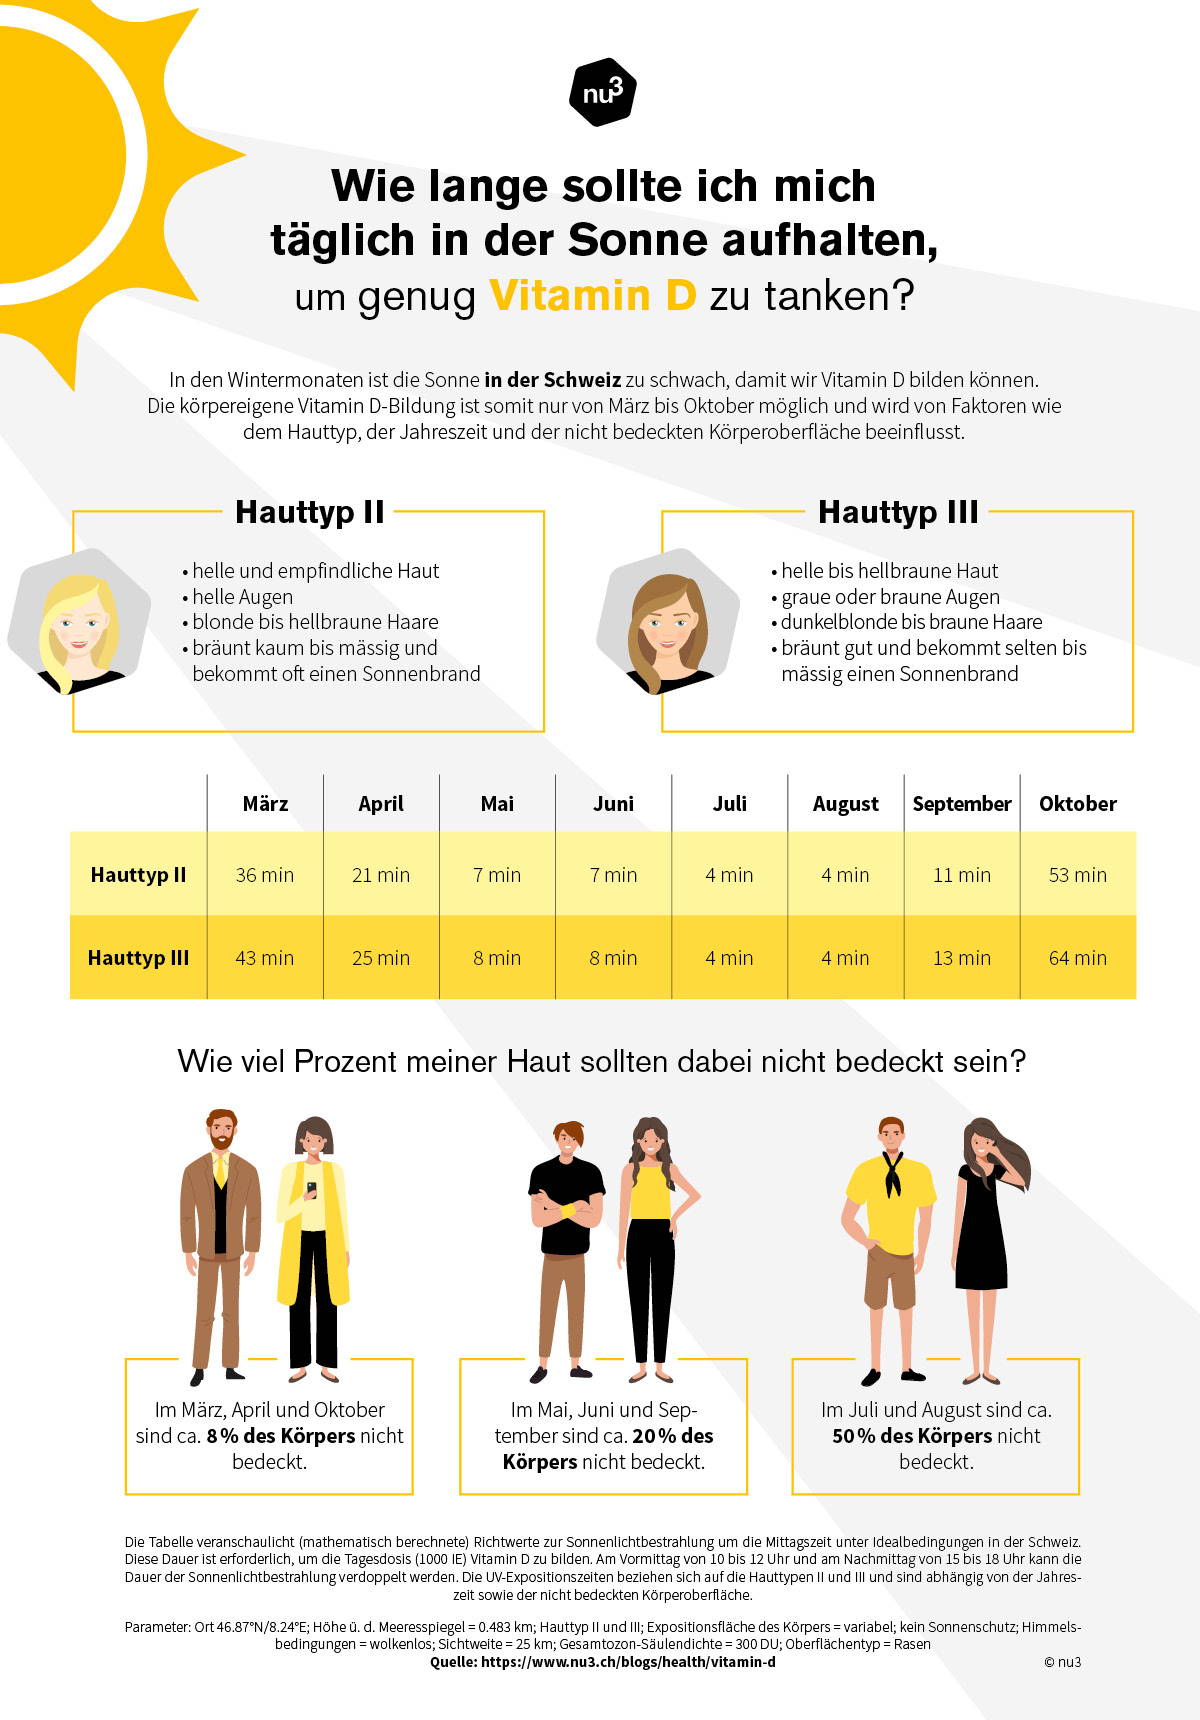 Wie viel Sonne für Vitamin D?